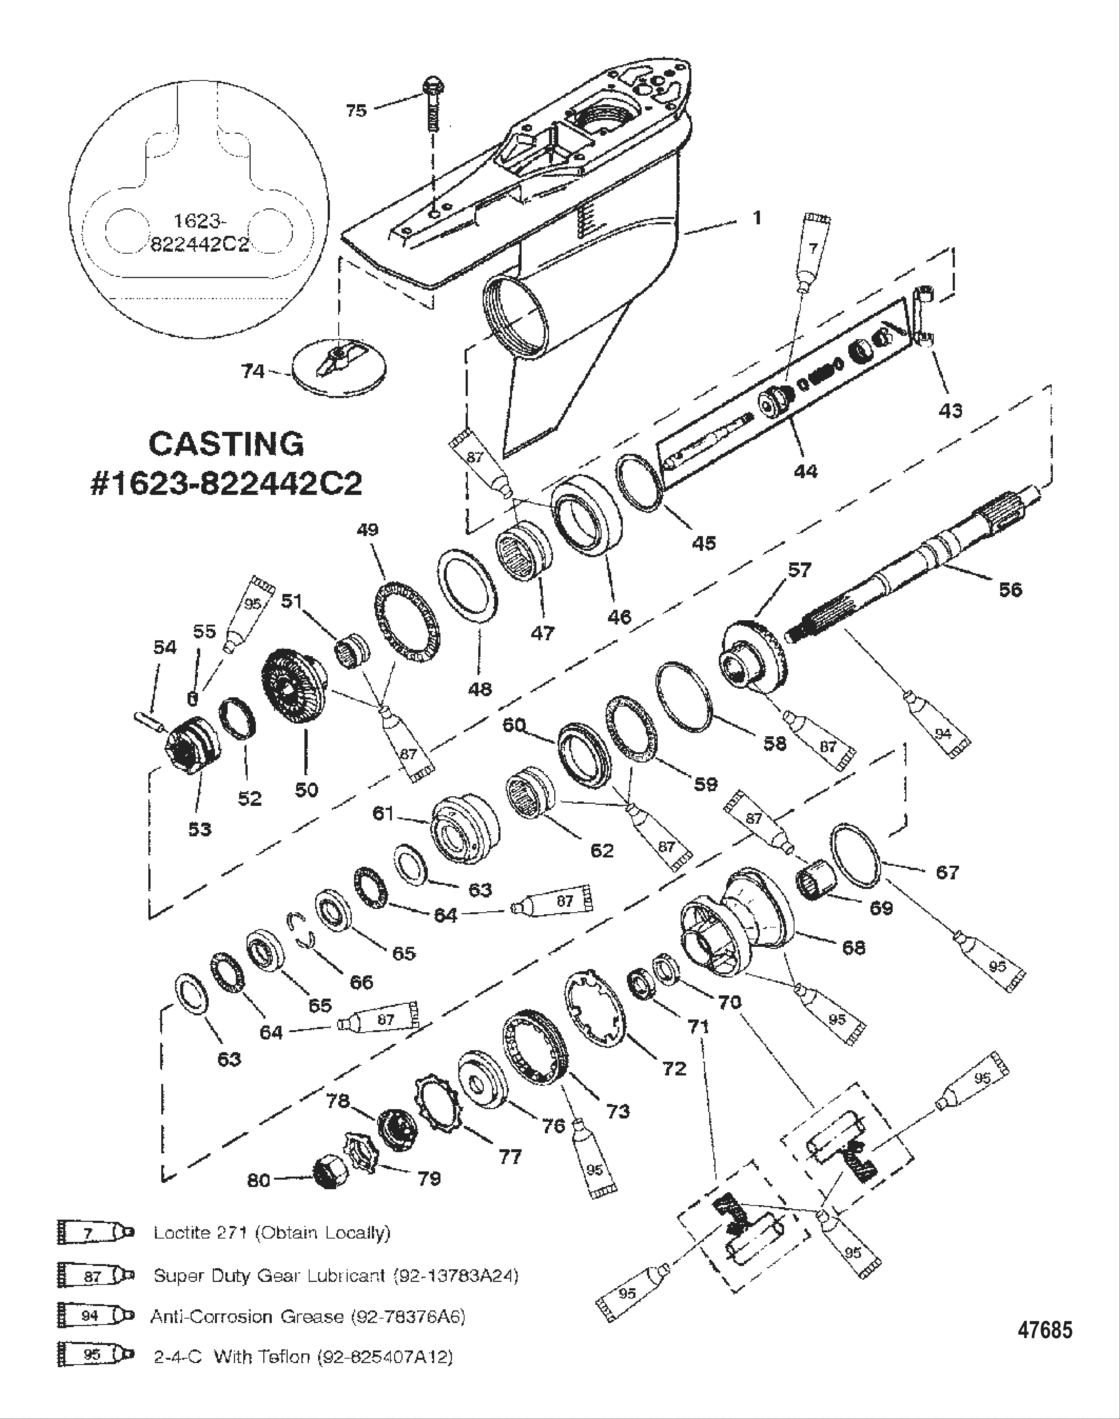 Gear Hsg (Prop Shaft)Counter Rotation(G437999 & Below)